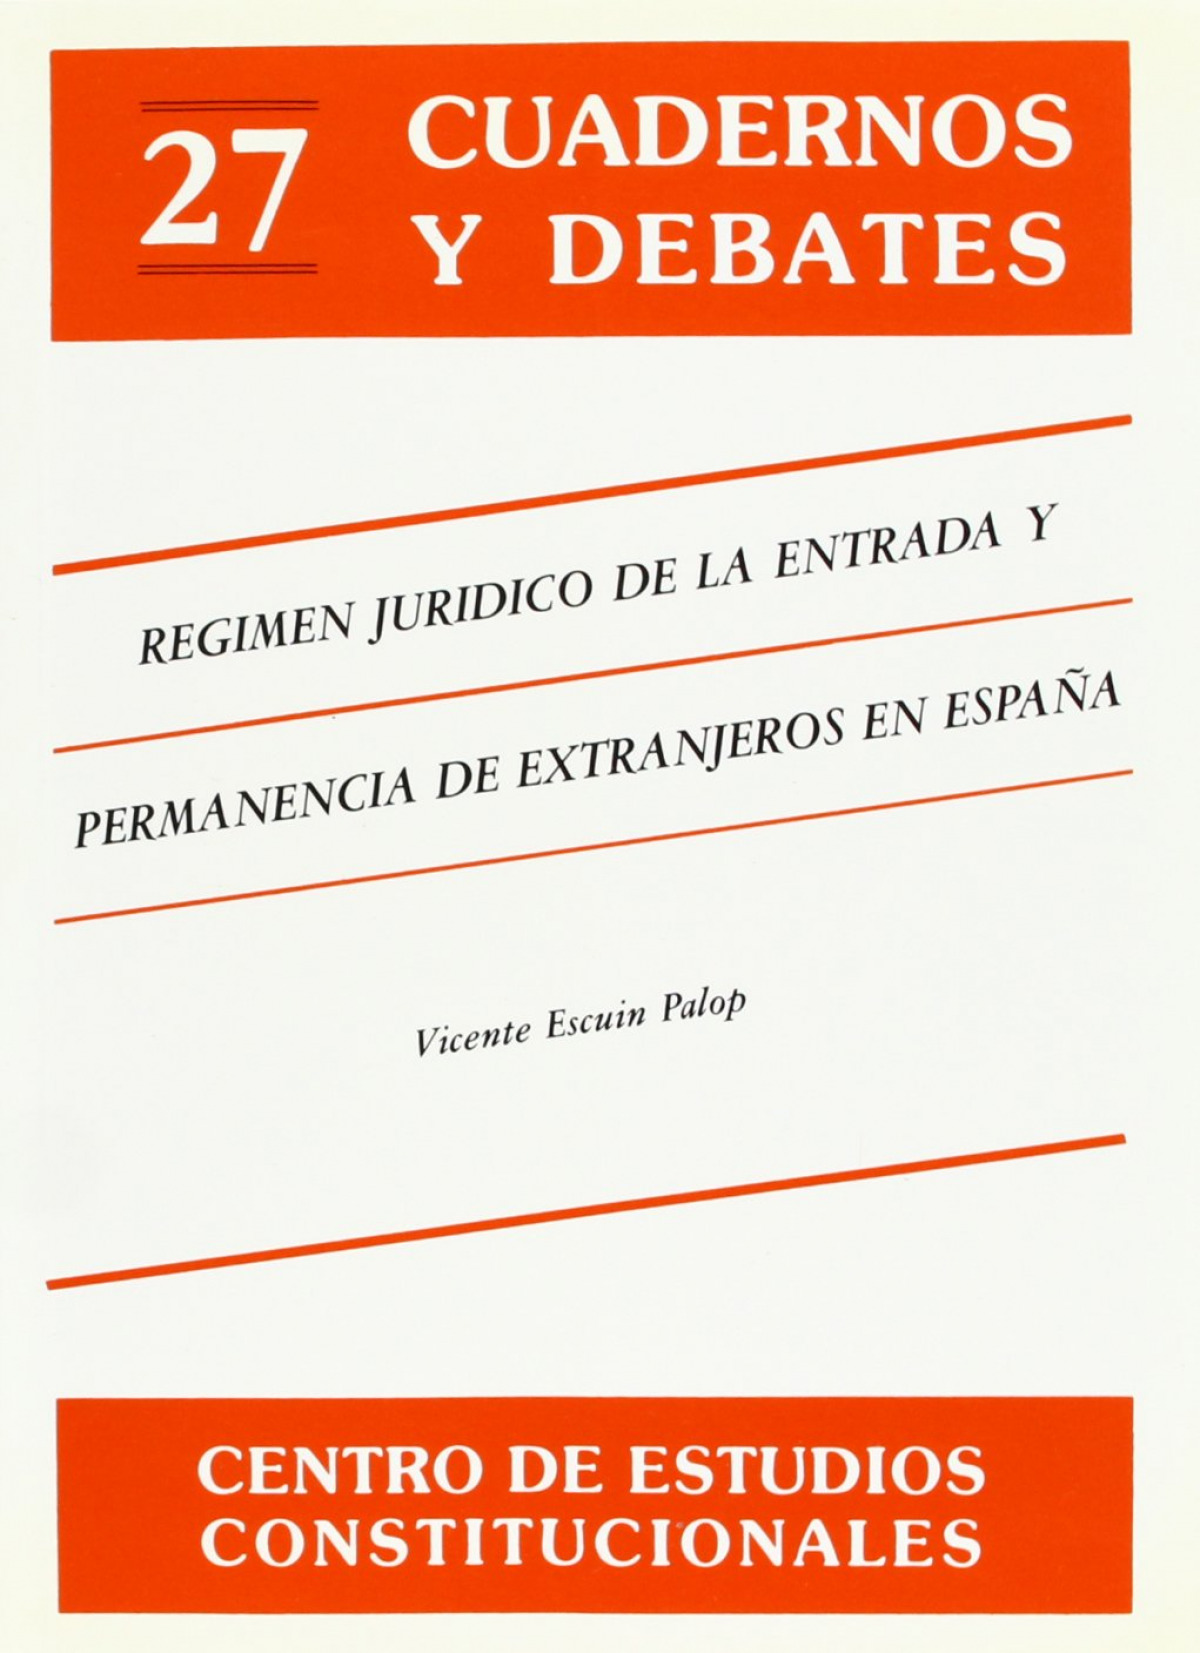 Régimen jurídico de entrada y permanencia de extranjeros en España En - Escuin Palop, Vicente